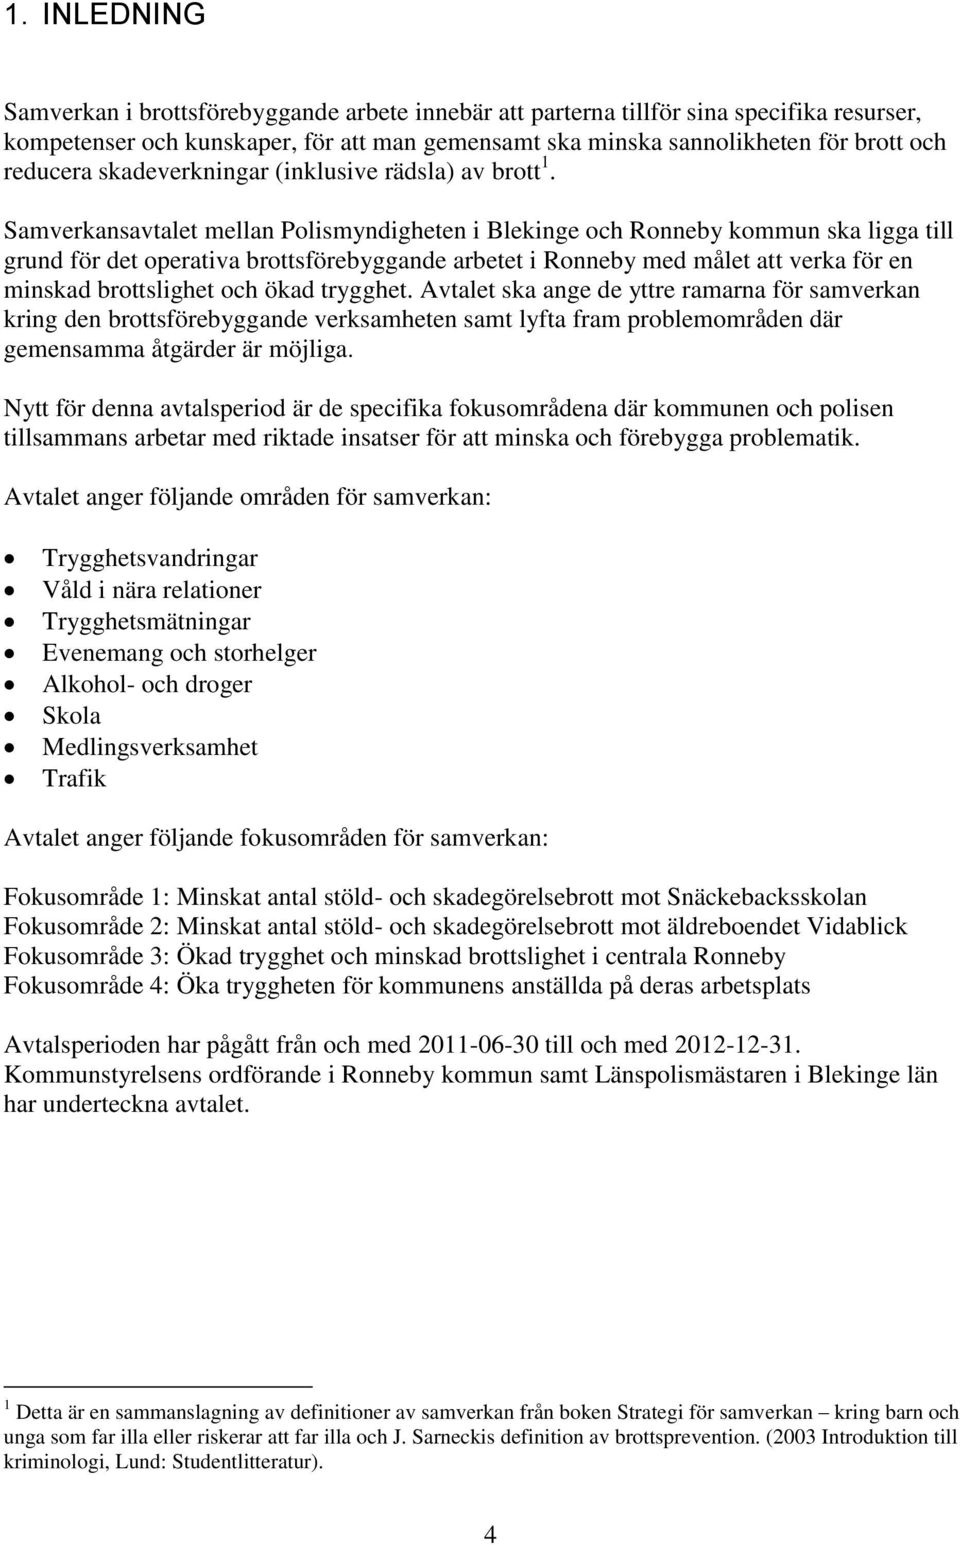 Samverkansavtalet mellan Polismyndigheten i Blekinge och Ronneby kommun ska ligga till grund för det operativa brottsförebyggande arbetet i Ronneby med målet att verka för en minskad brottslighet och